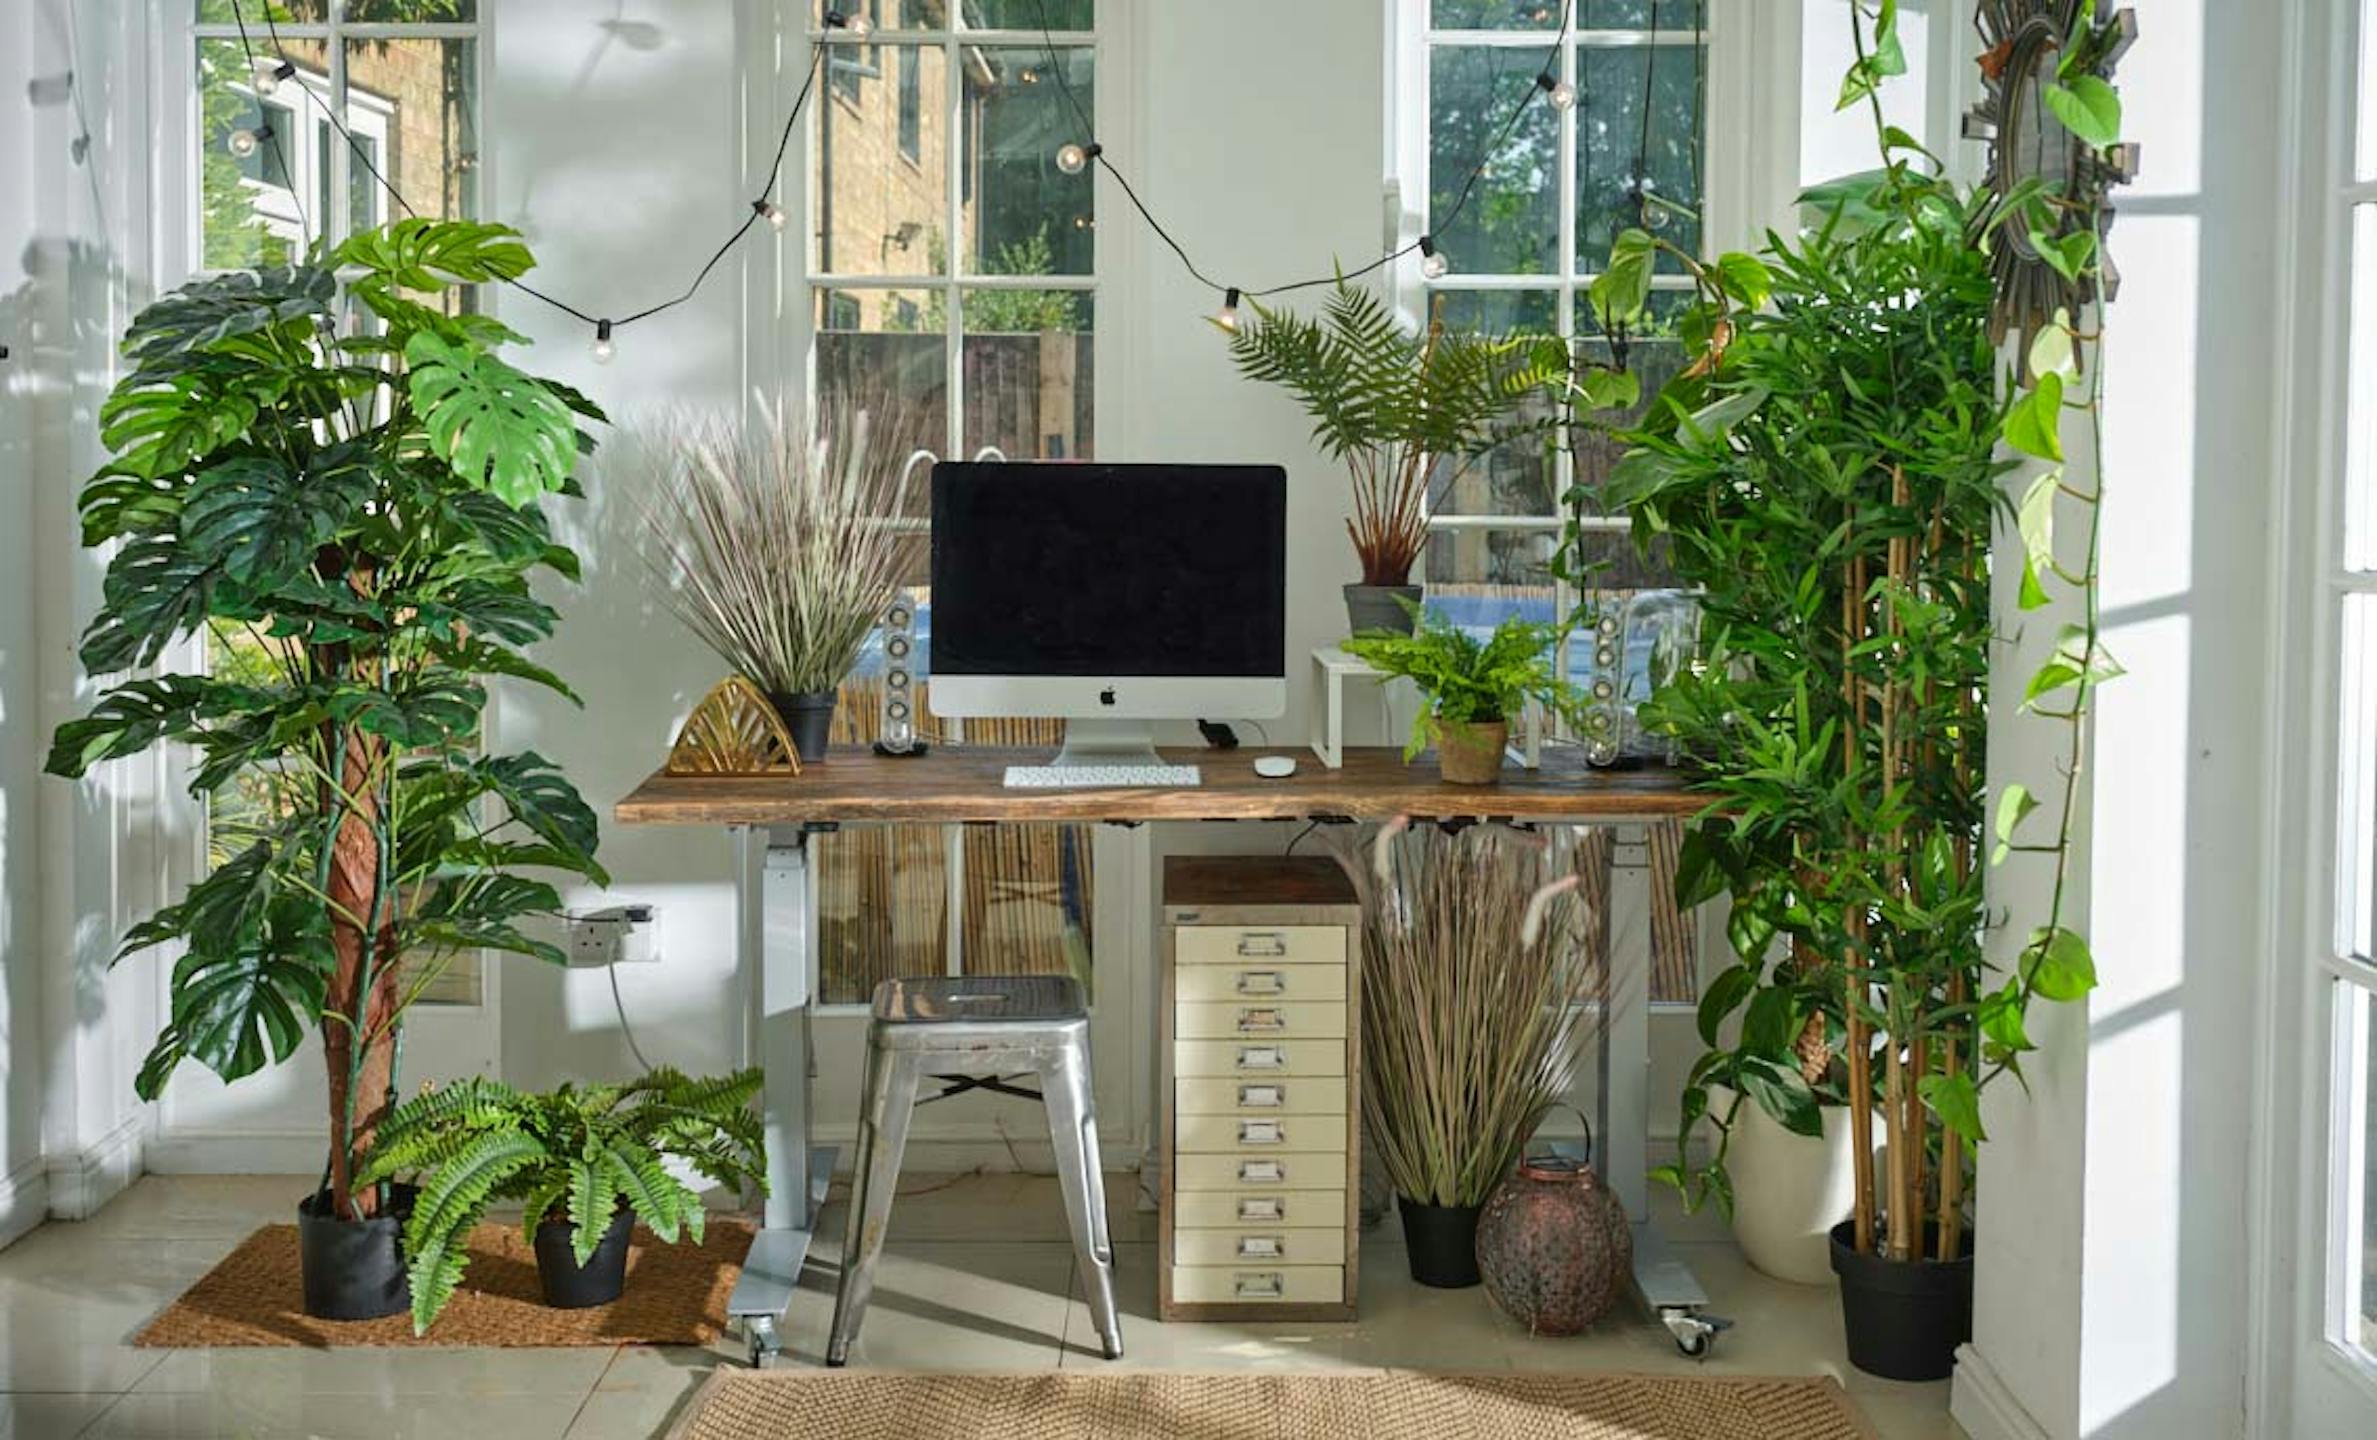 Artificial plants surrounding desk space